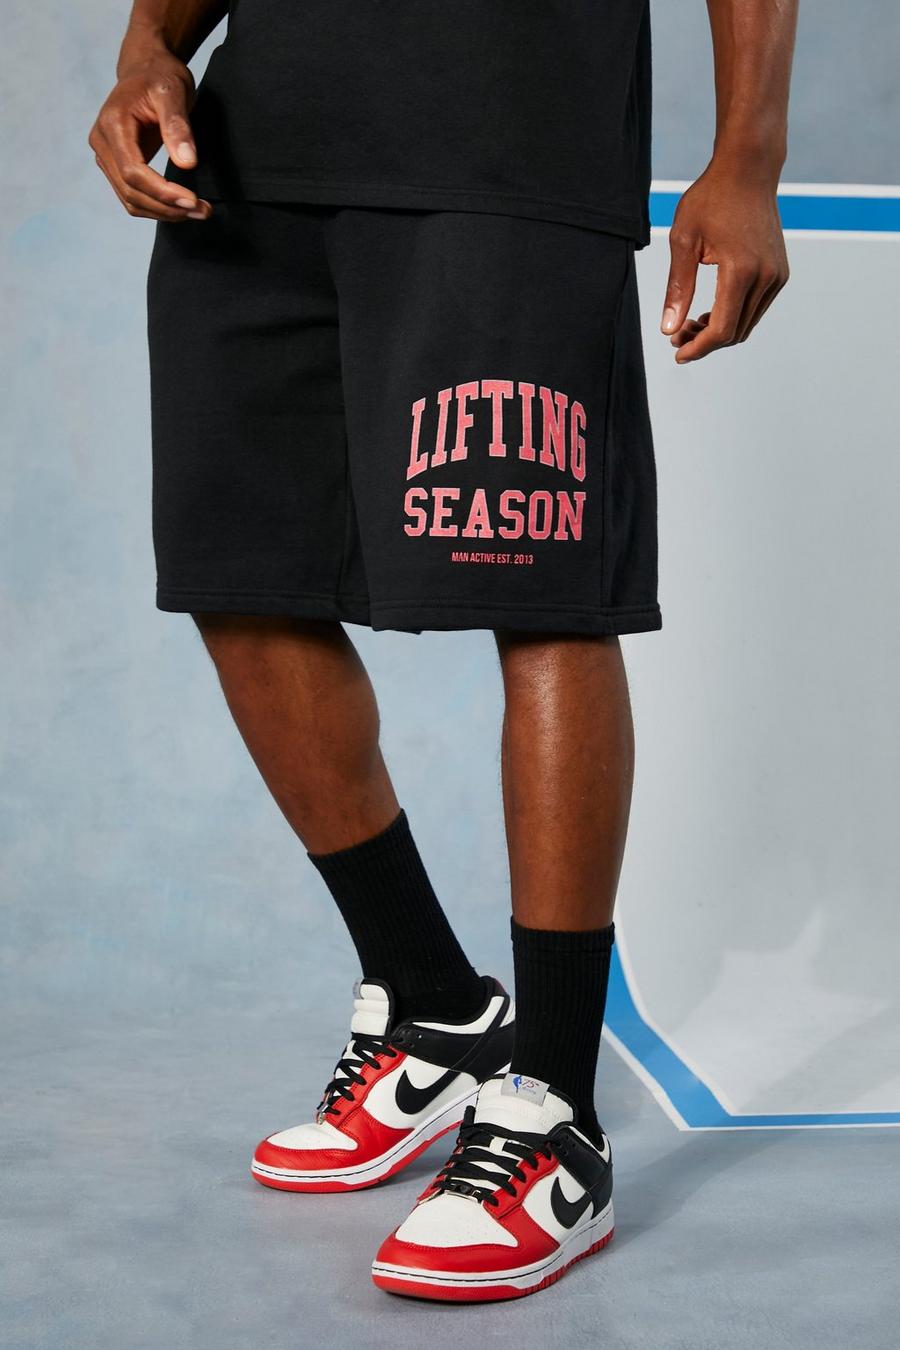 Black Man Active Lifting Season Loose Fit Shorts image number 1